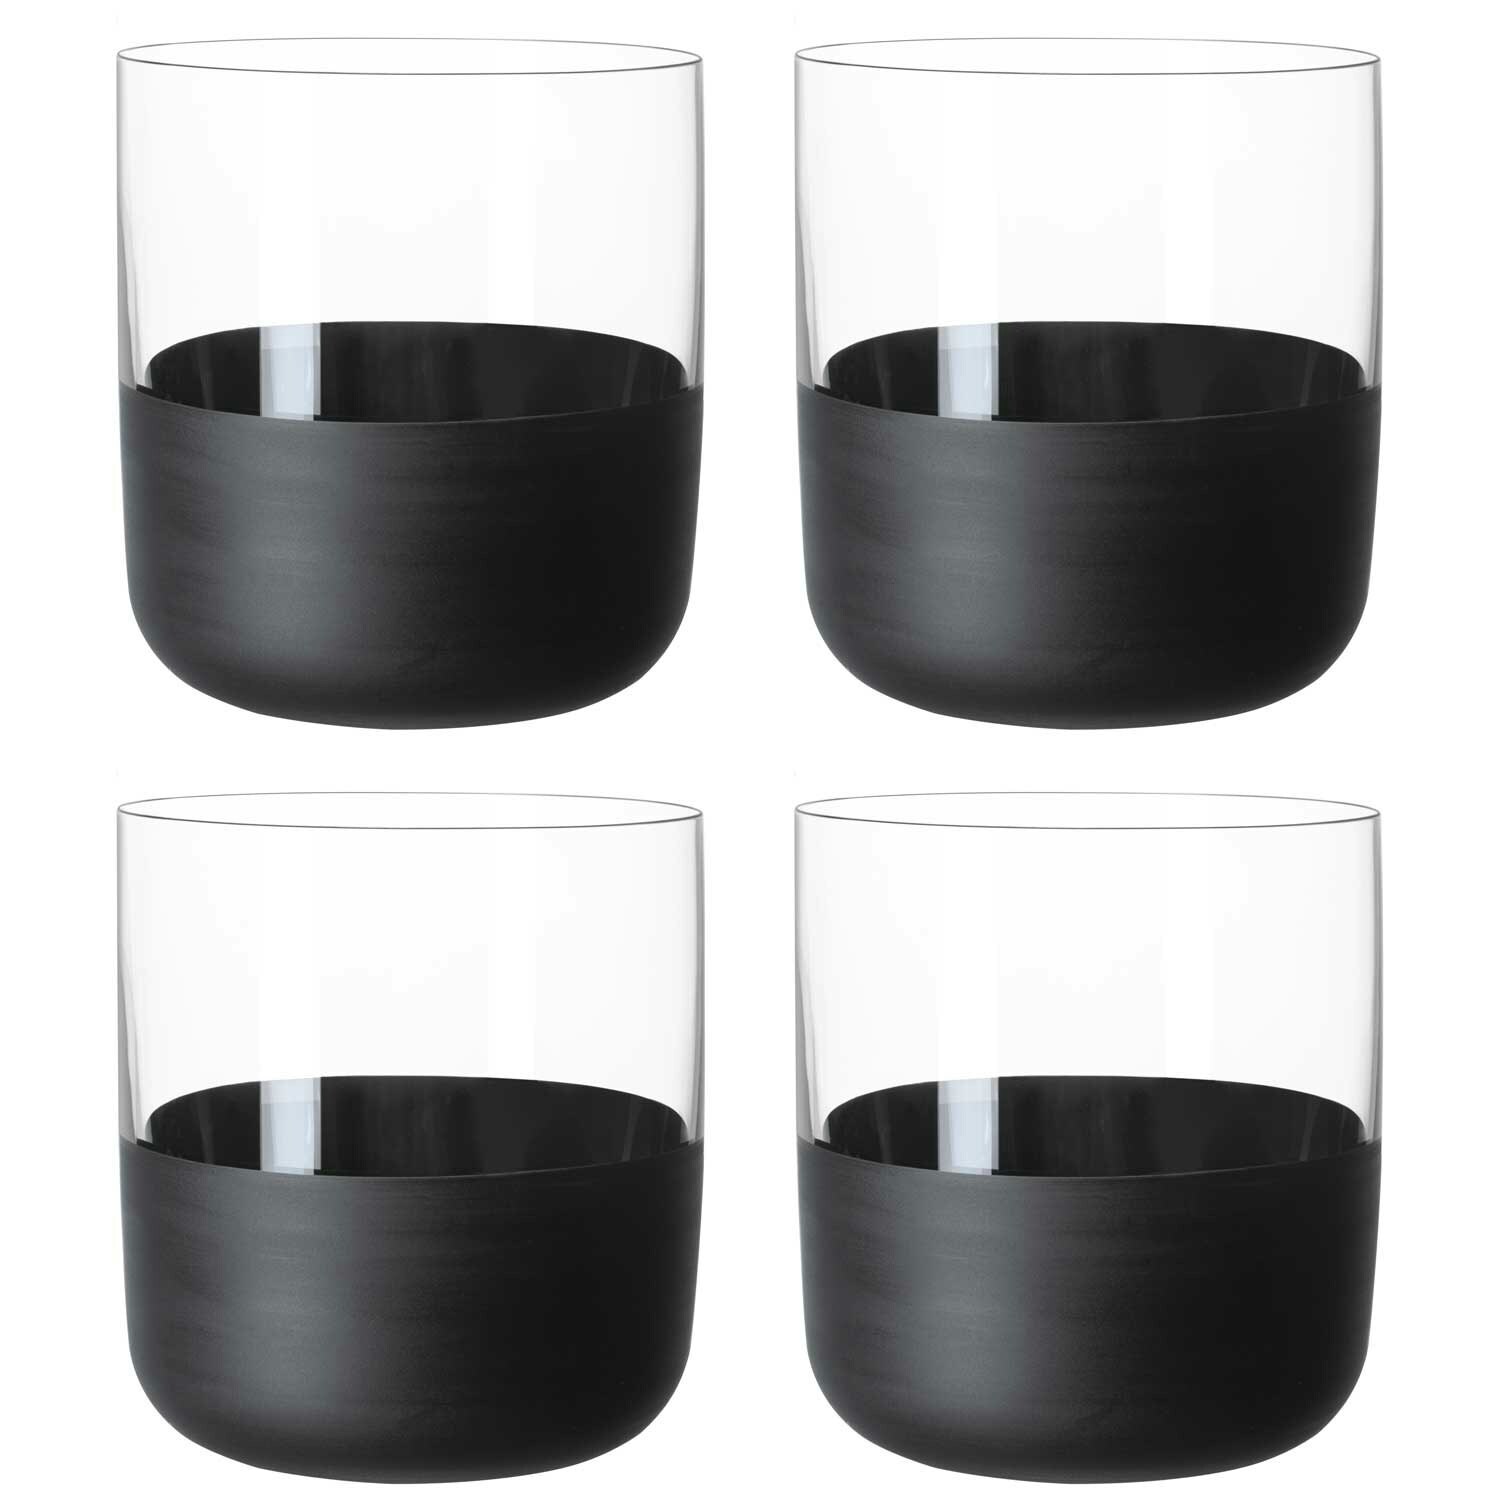 https://royaldesign.com/image/2/villeroy-boch-manufacture-rock-shot-glasses-4-cl-4-pack-0